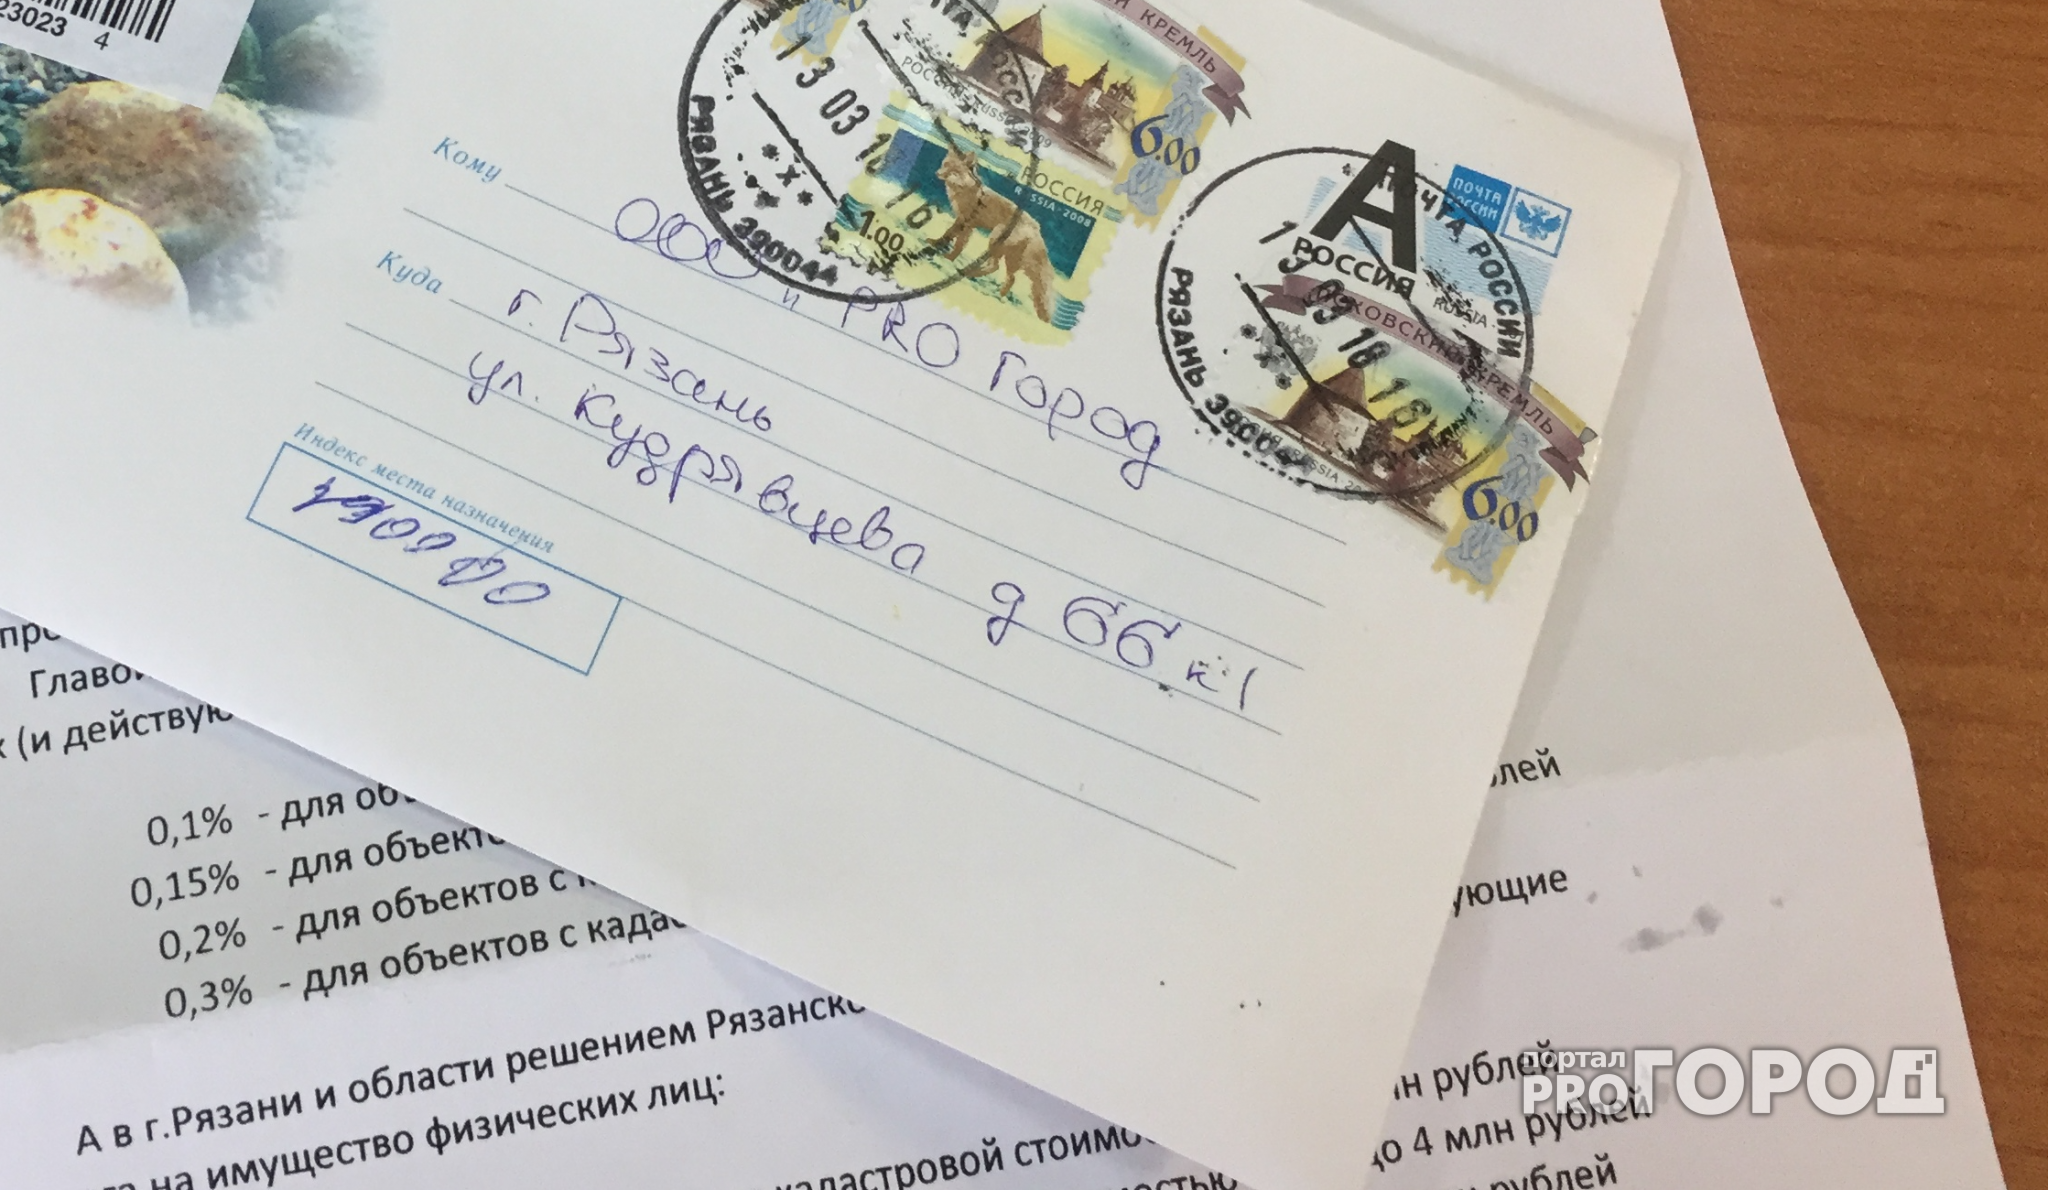 Открытое письмо: жители Рязани просят пересмотреть ставку налога на имущество… пока не поздно